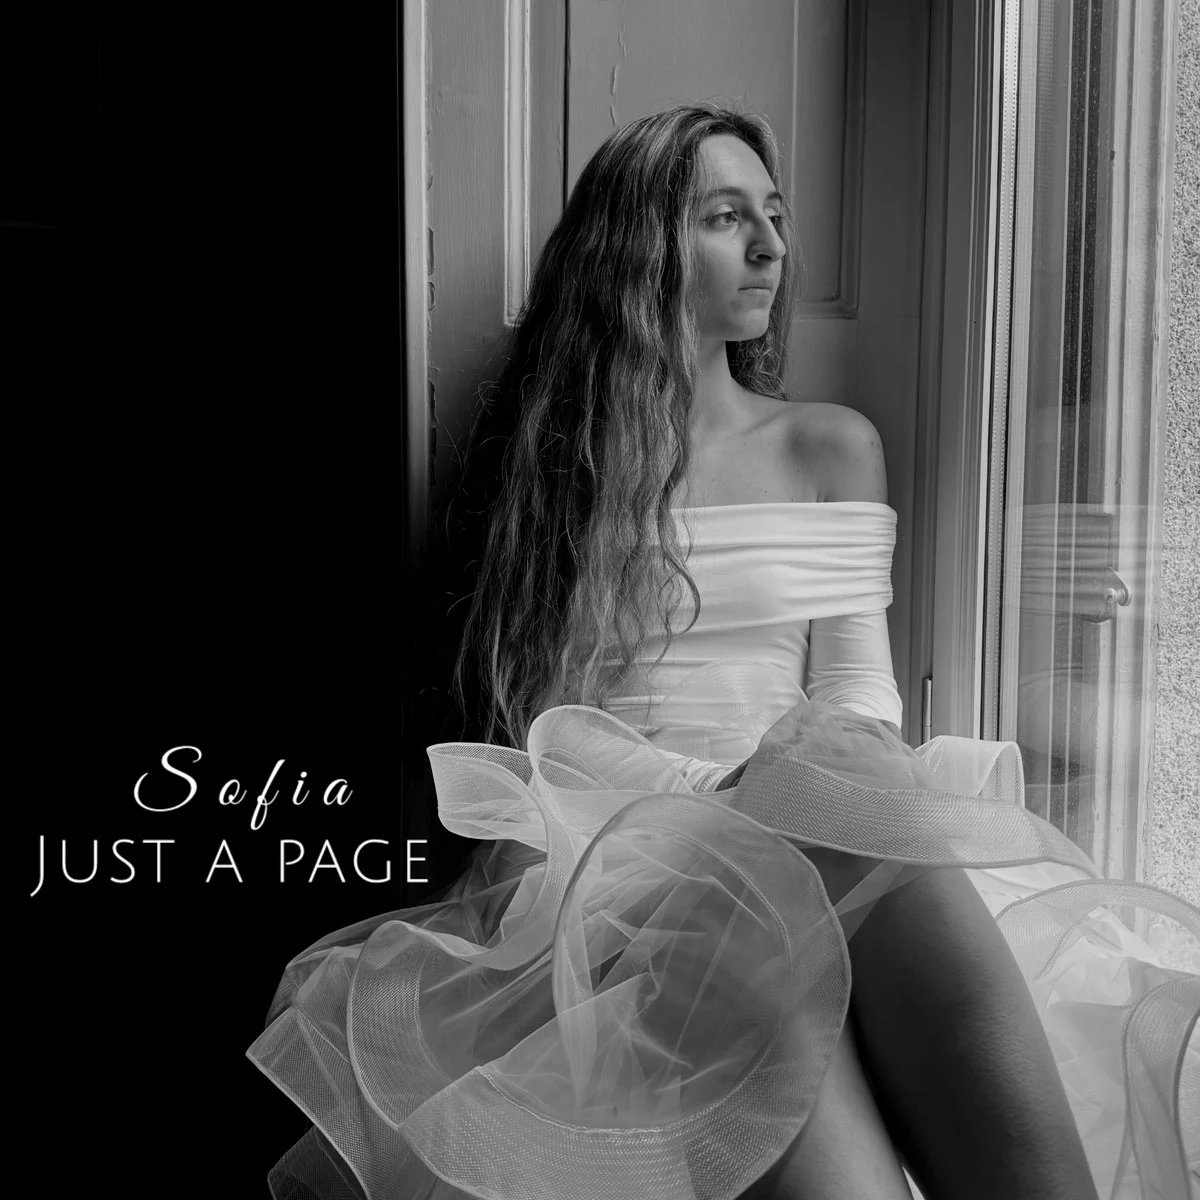 SOFIA è fuori dal 3 maggio con “JUST A PAGE”, il nuovo singolo